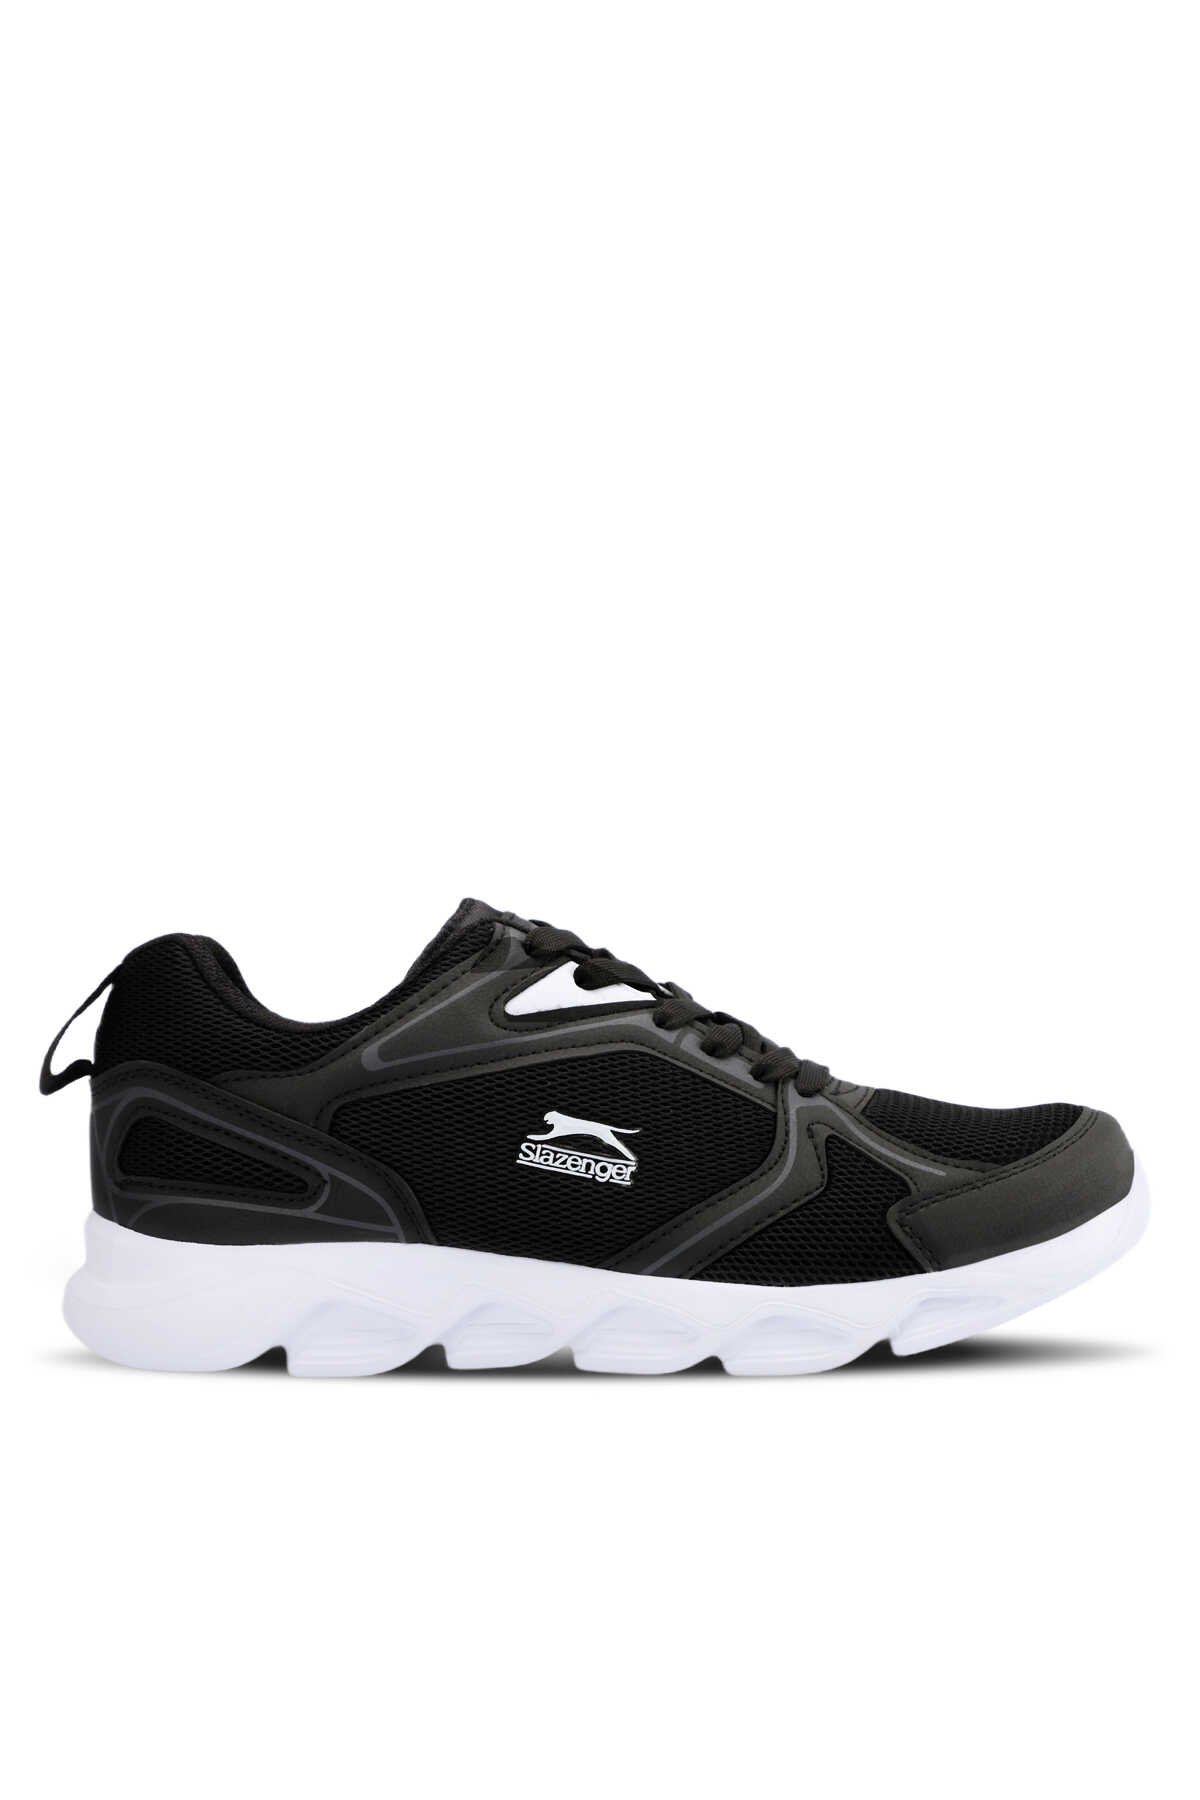 Slazenger - Slazenger KANDA I Sneaker Erkek Ayakkabı Siyah / Beyaz